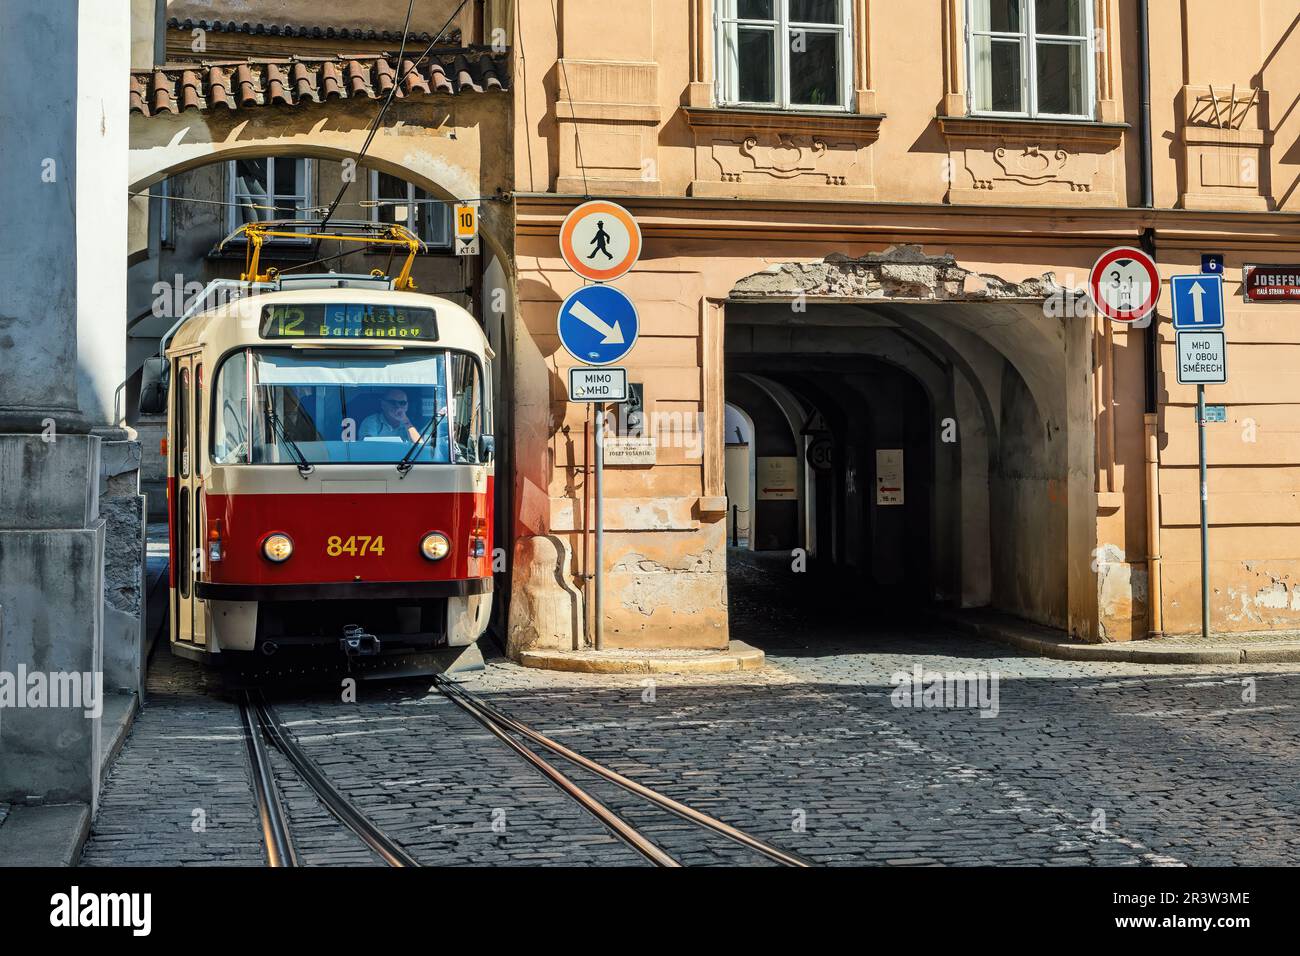 Straßenbahn auf der kopfsteingepflasterten Straße im alten historischen Teil von Prag, Tschechien. Stockfoto